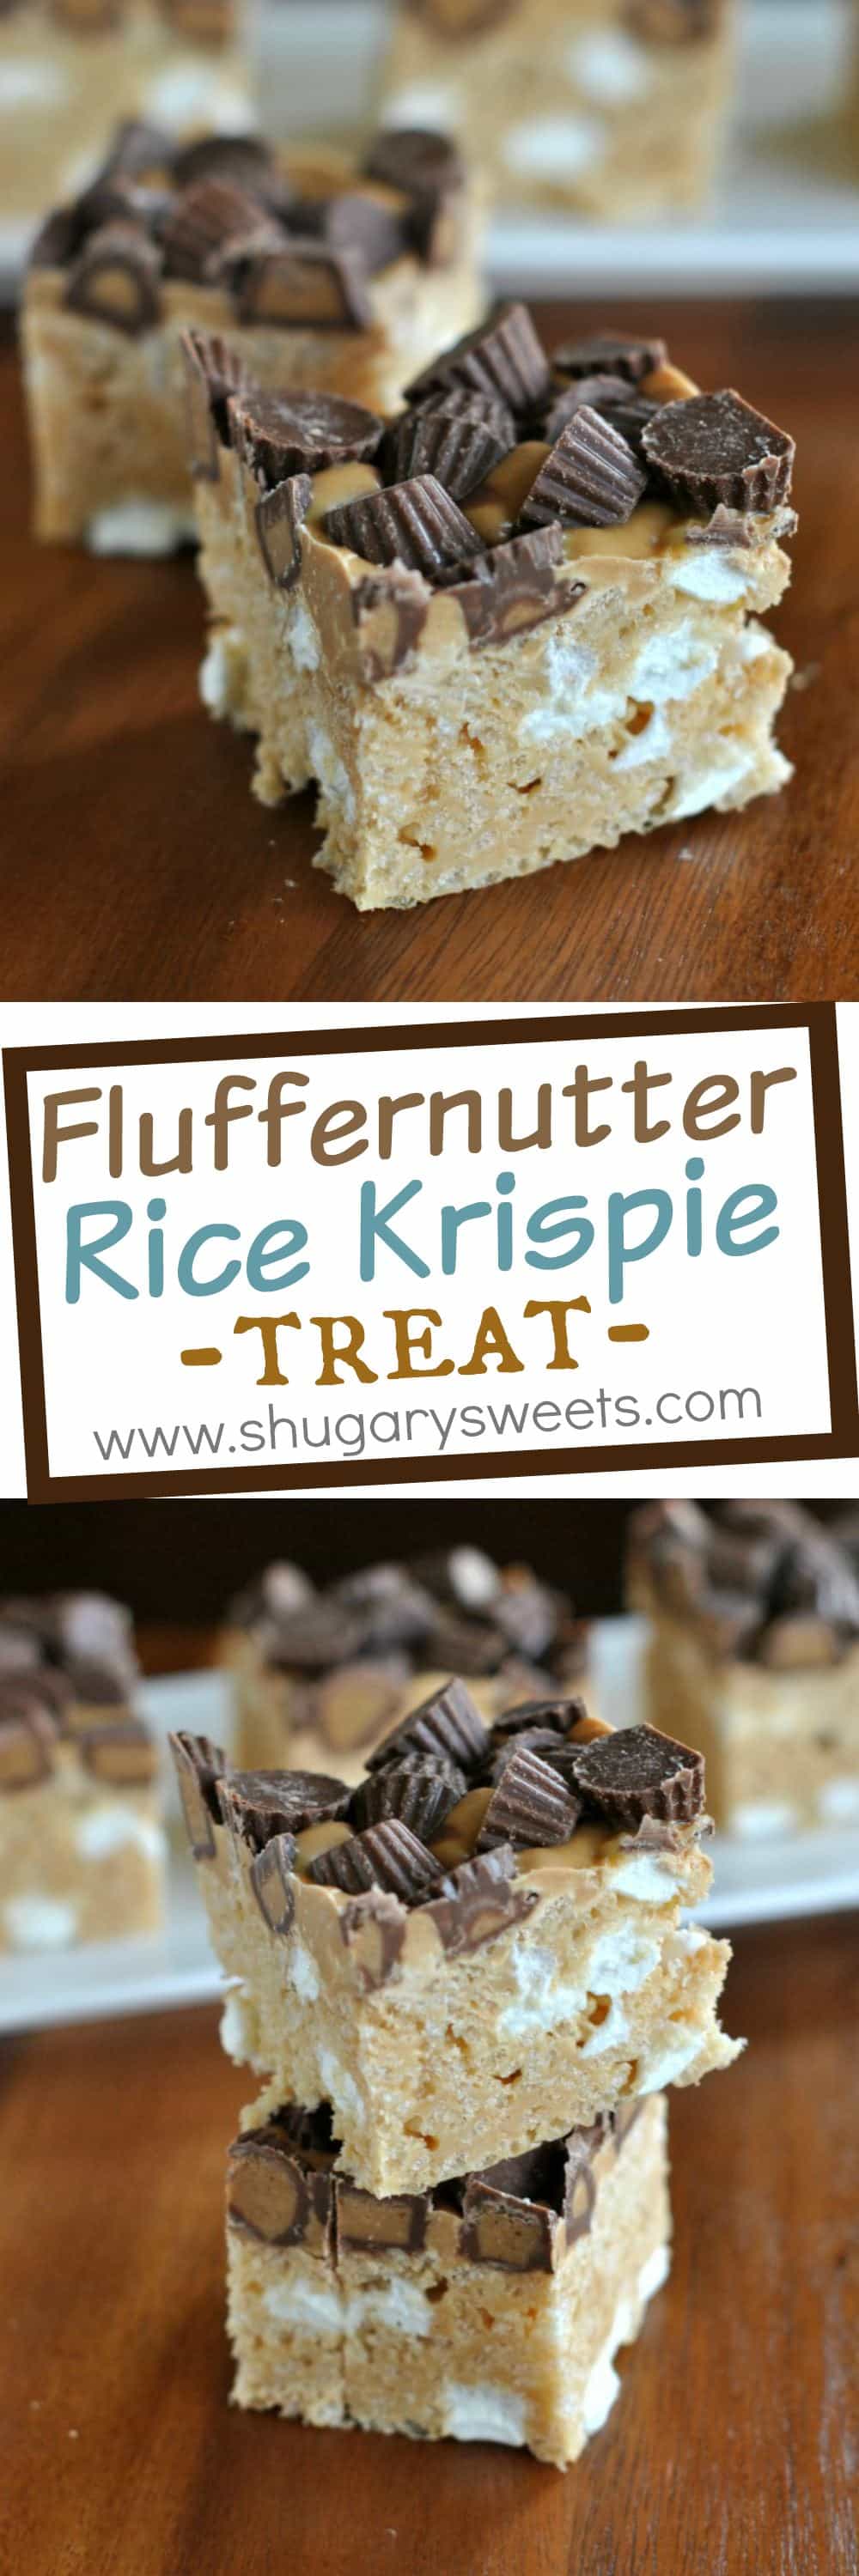 fluffernutter-rice-krispie-treat-11 - Shugary Sweets